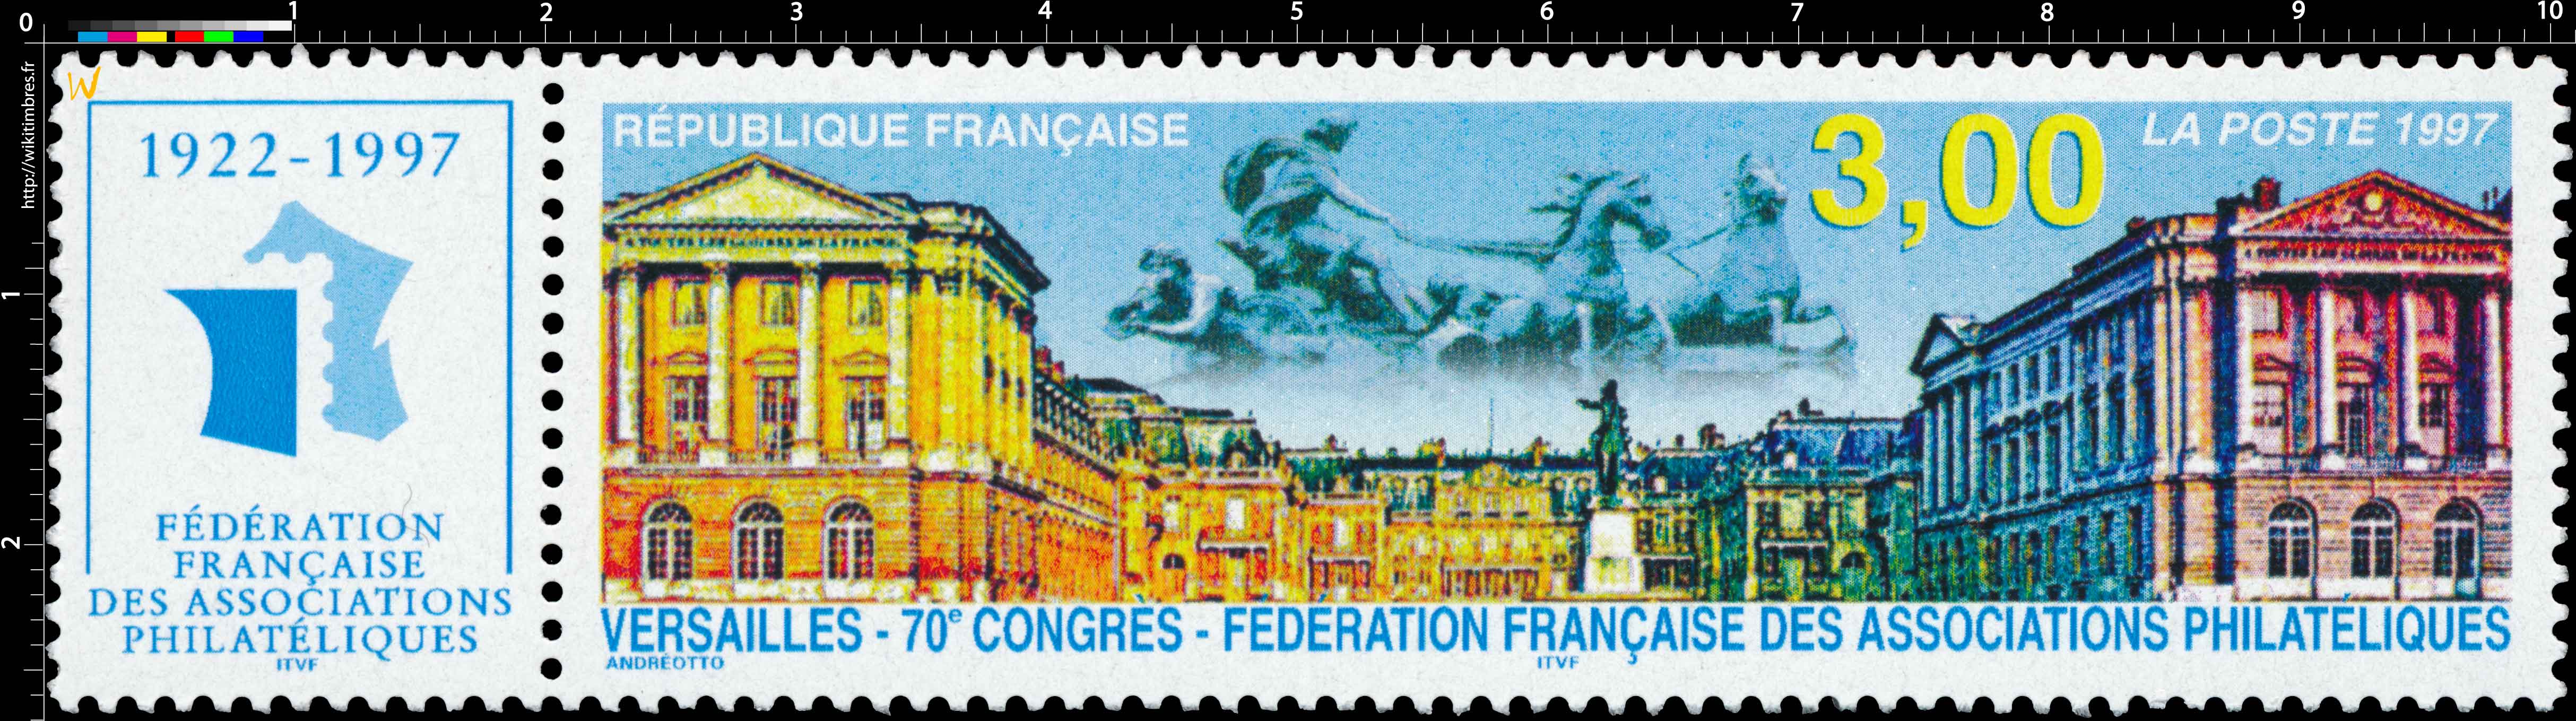 1997 VERSAILLES - 70e CONGRÈS - FÉDÉRATION FRANÇAISE DES ASSOCIATIONS PHILATÉLIQUES